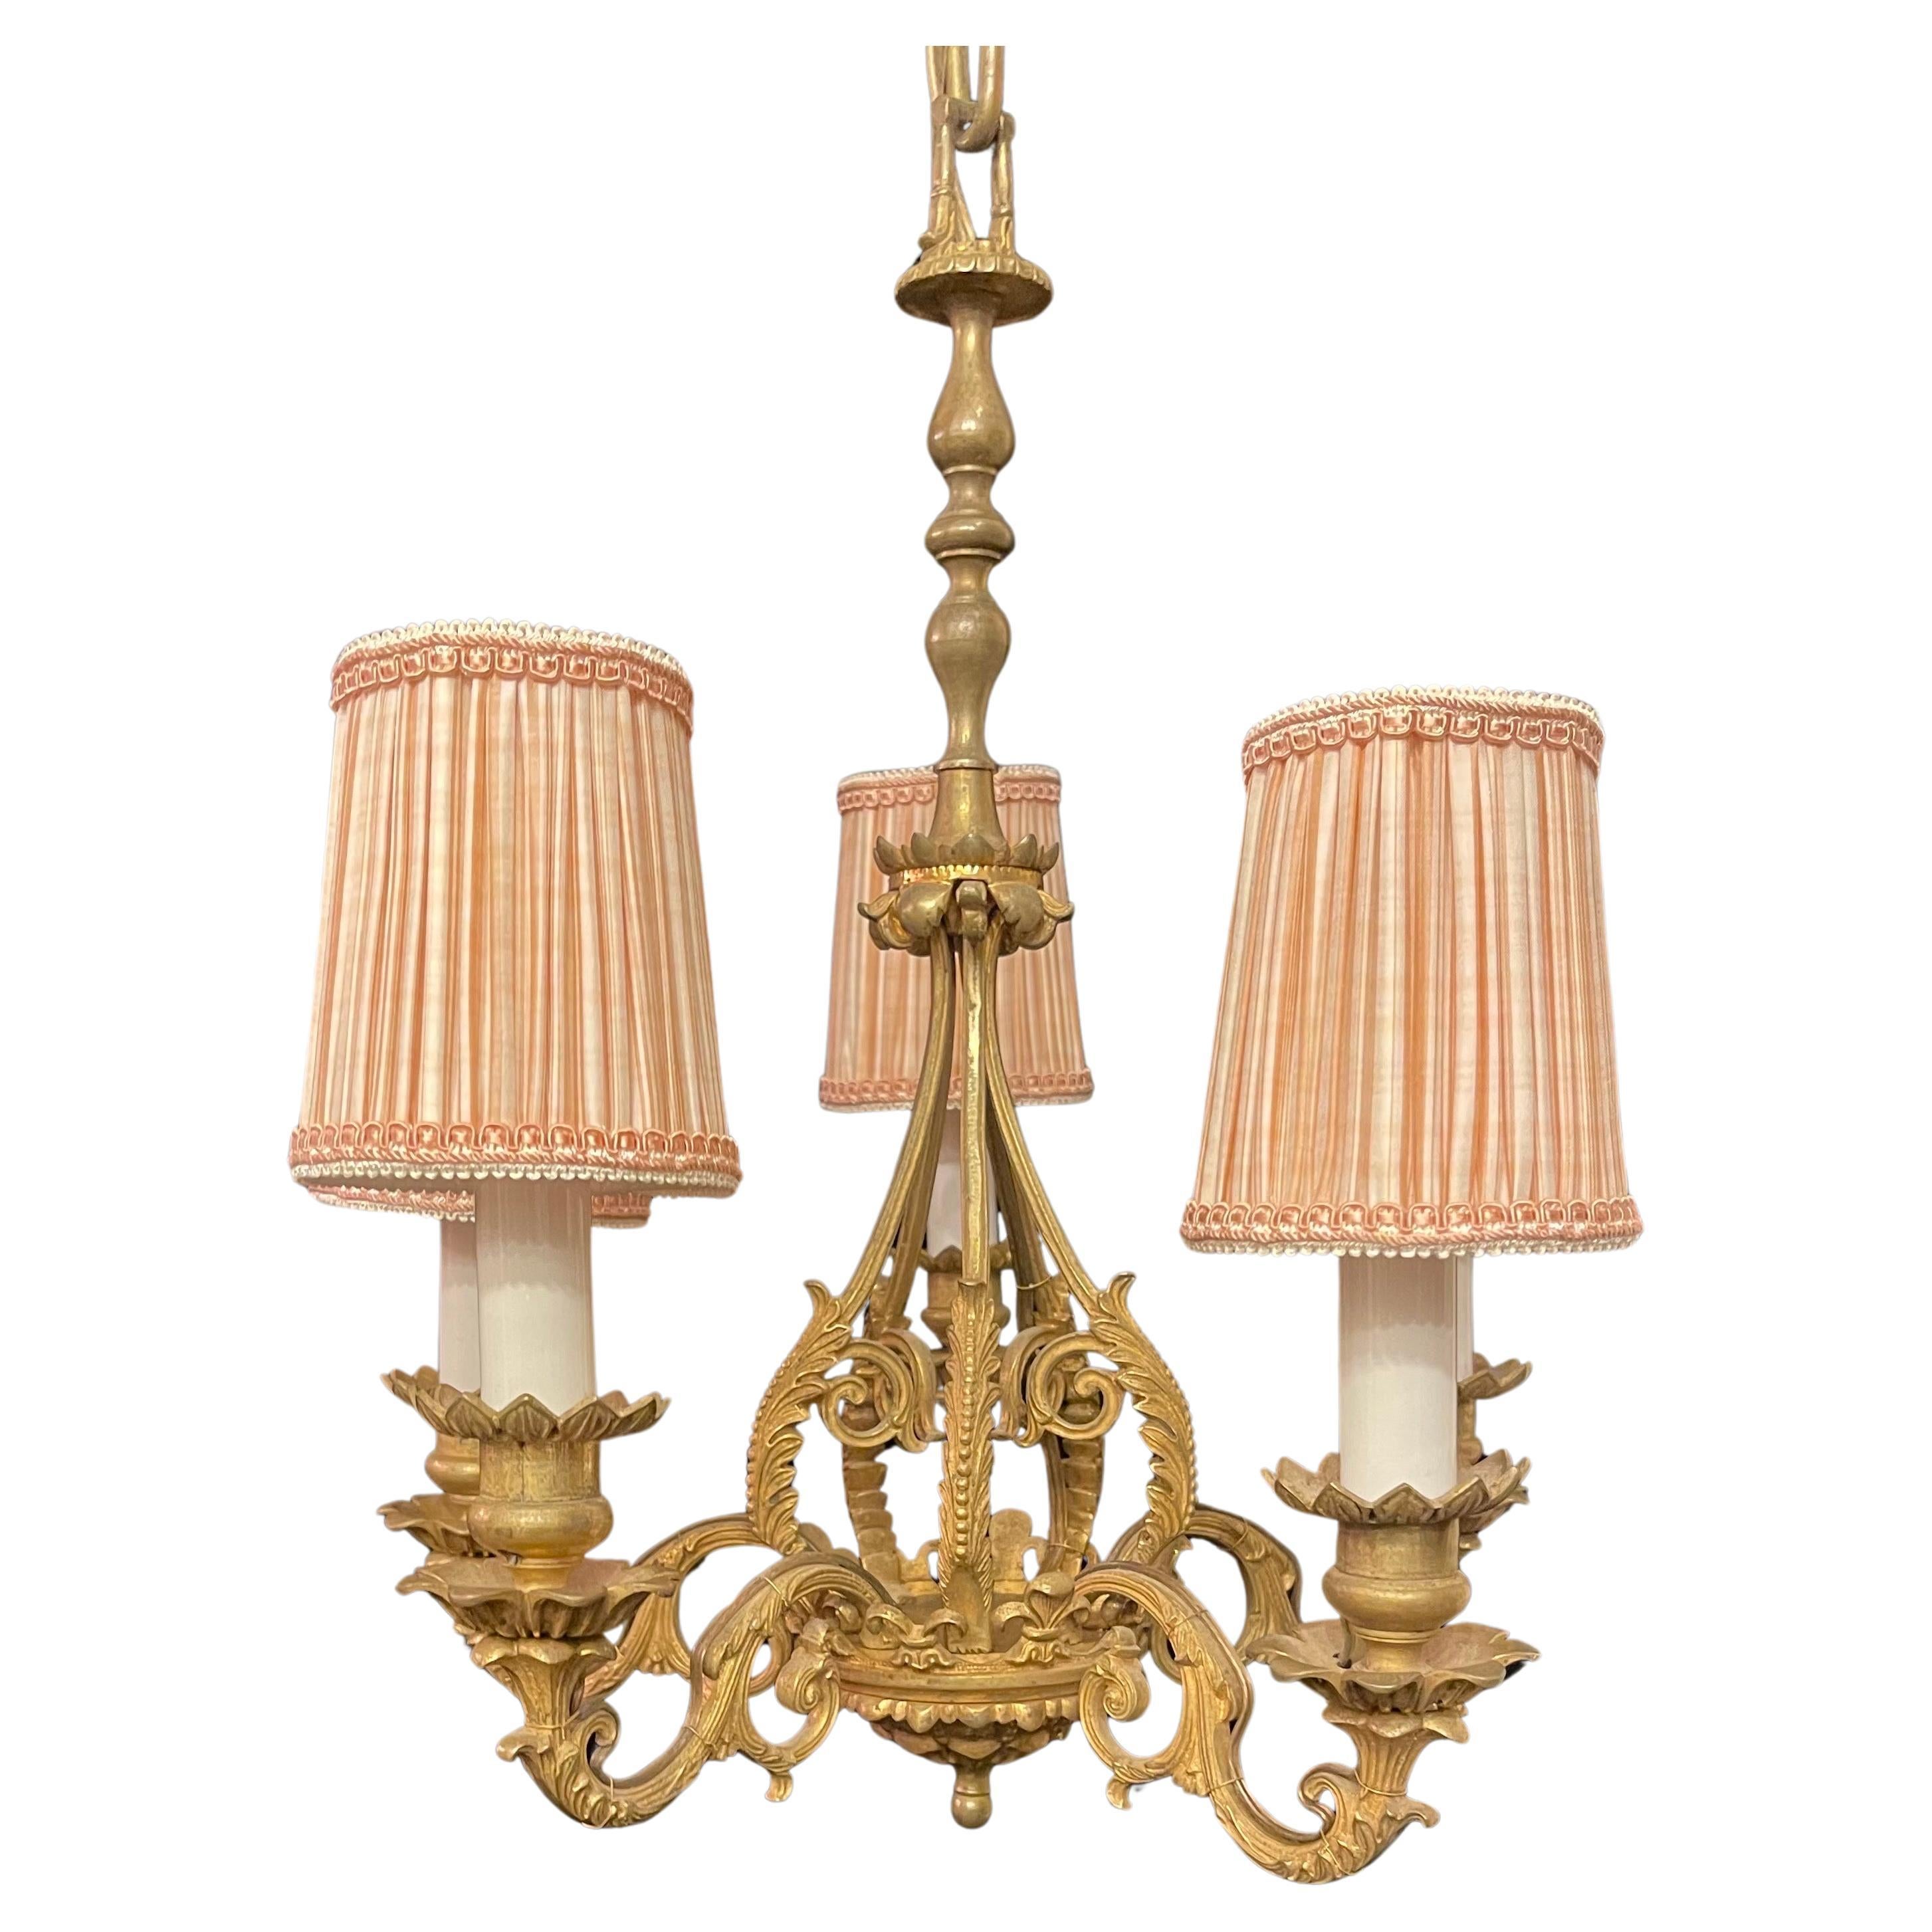 Merveilleux lustre Empire français en bronze doré de style Régence à cinq candélabres. Ce luminaire est livré avec des abat-jours qui peuvent être enlevés. 